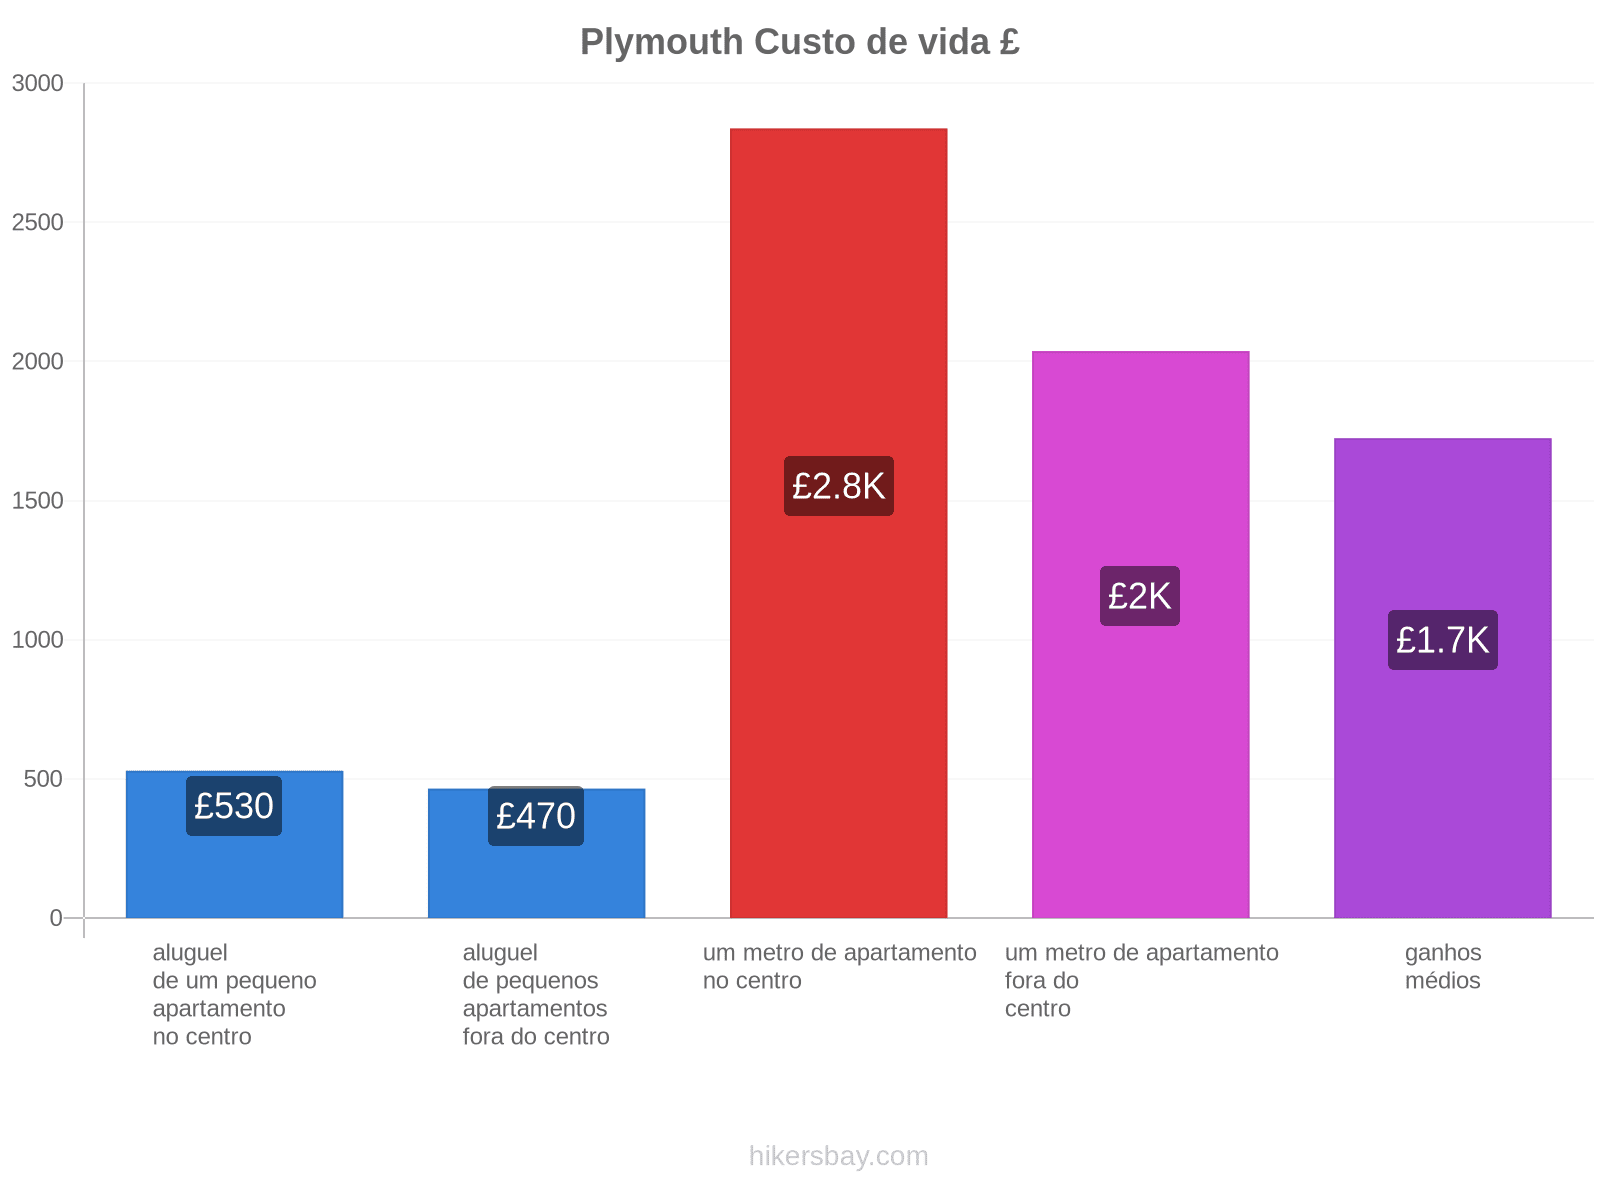 Plymouth custo de vida hikersbay.com